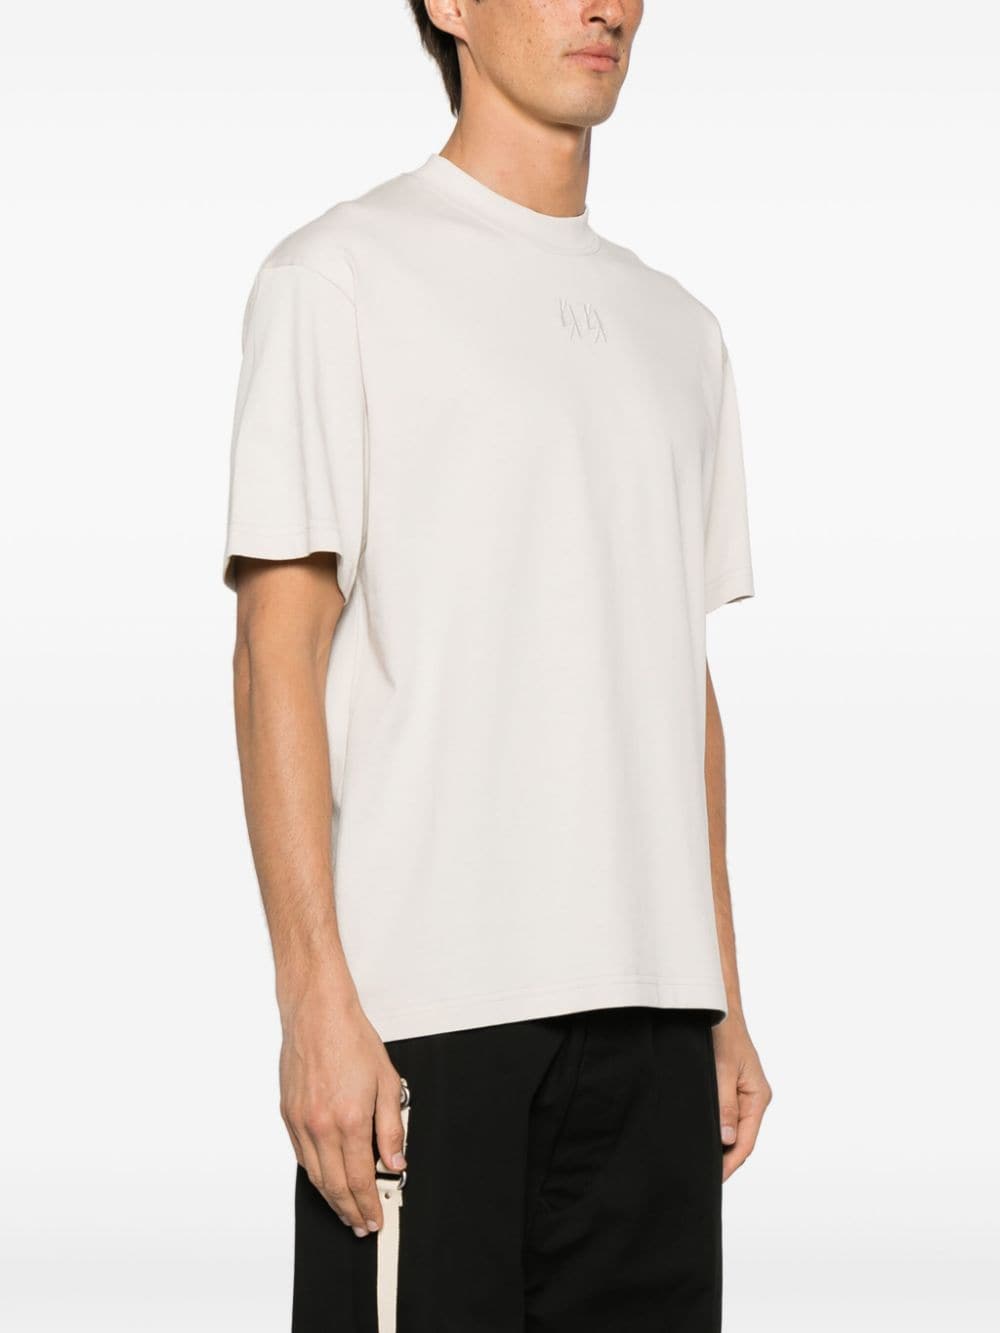 T-shirt blanc sale avec logo noir